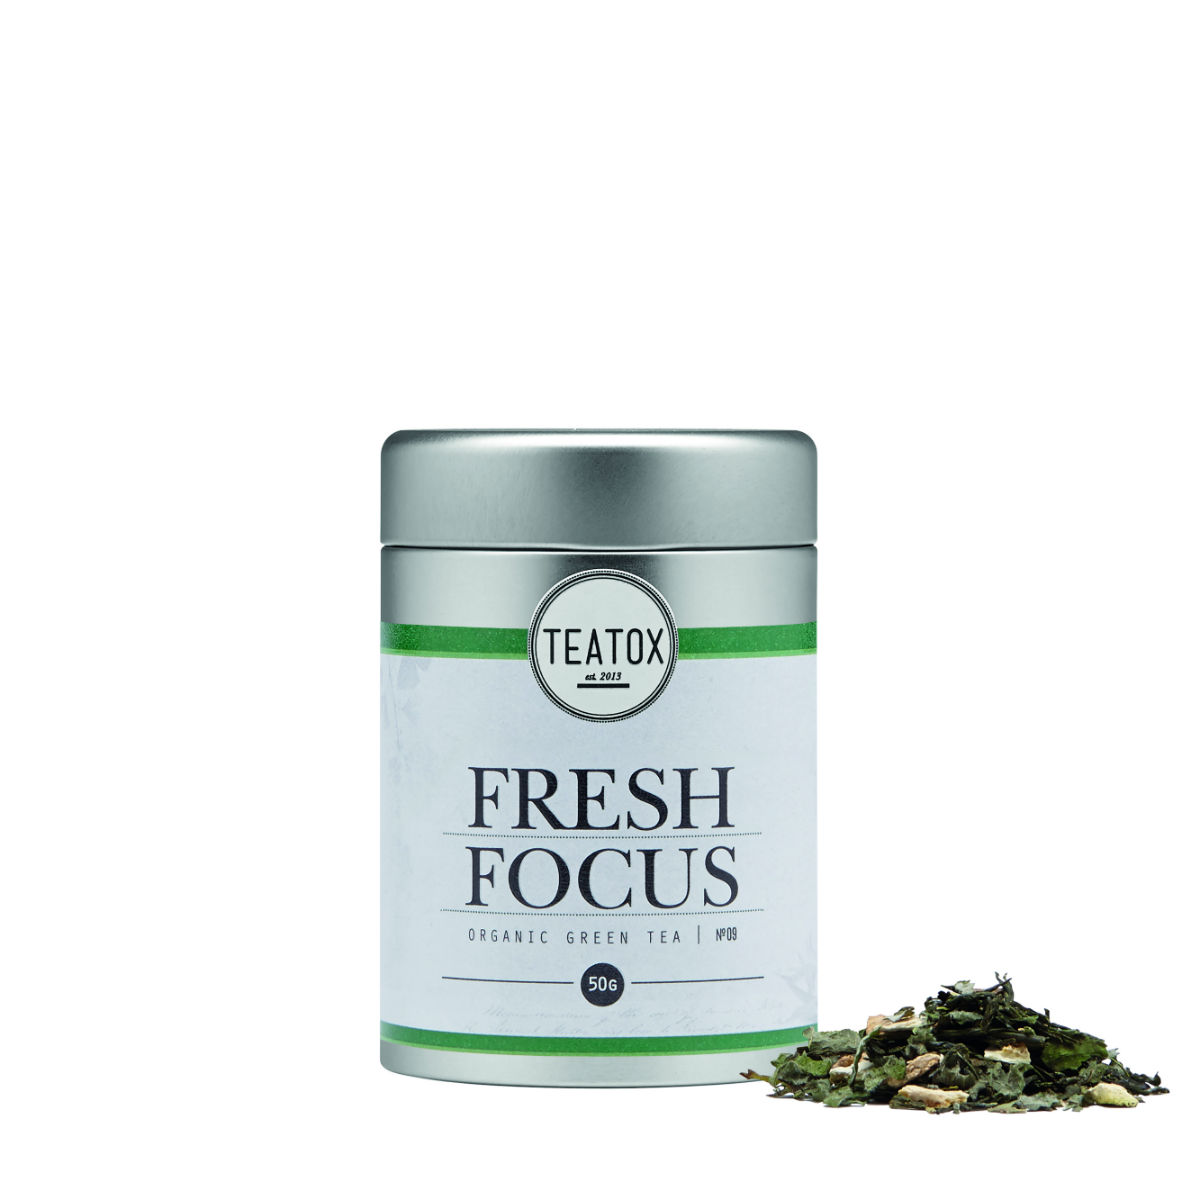 Teatox-fresh_focus_tea_print